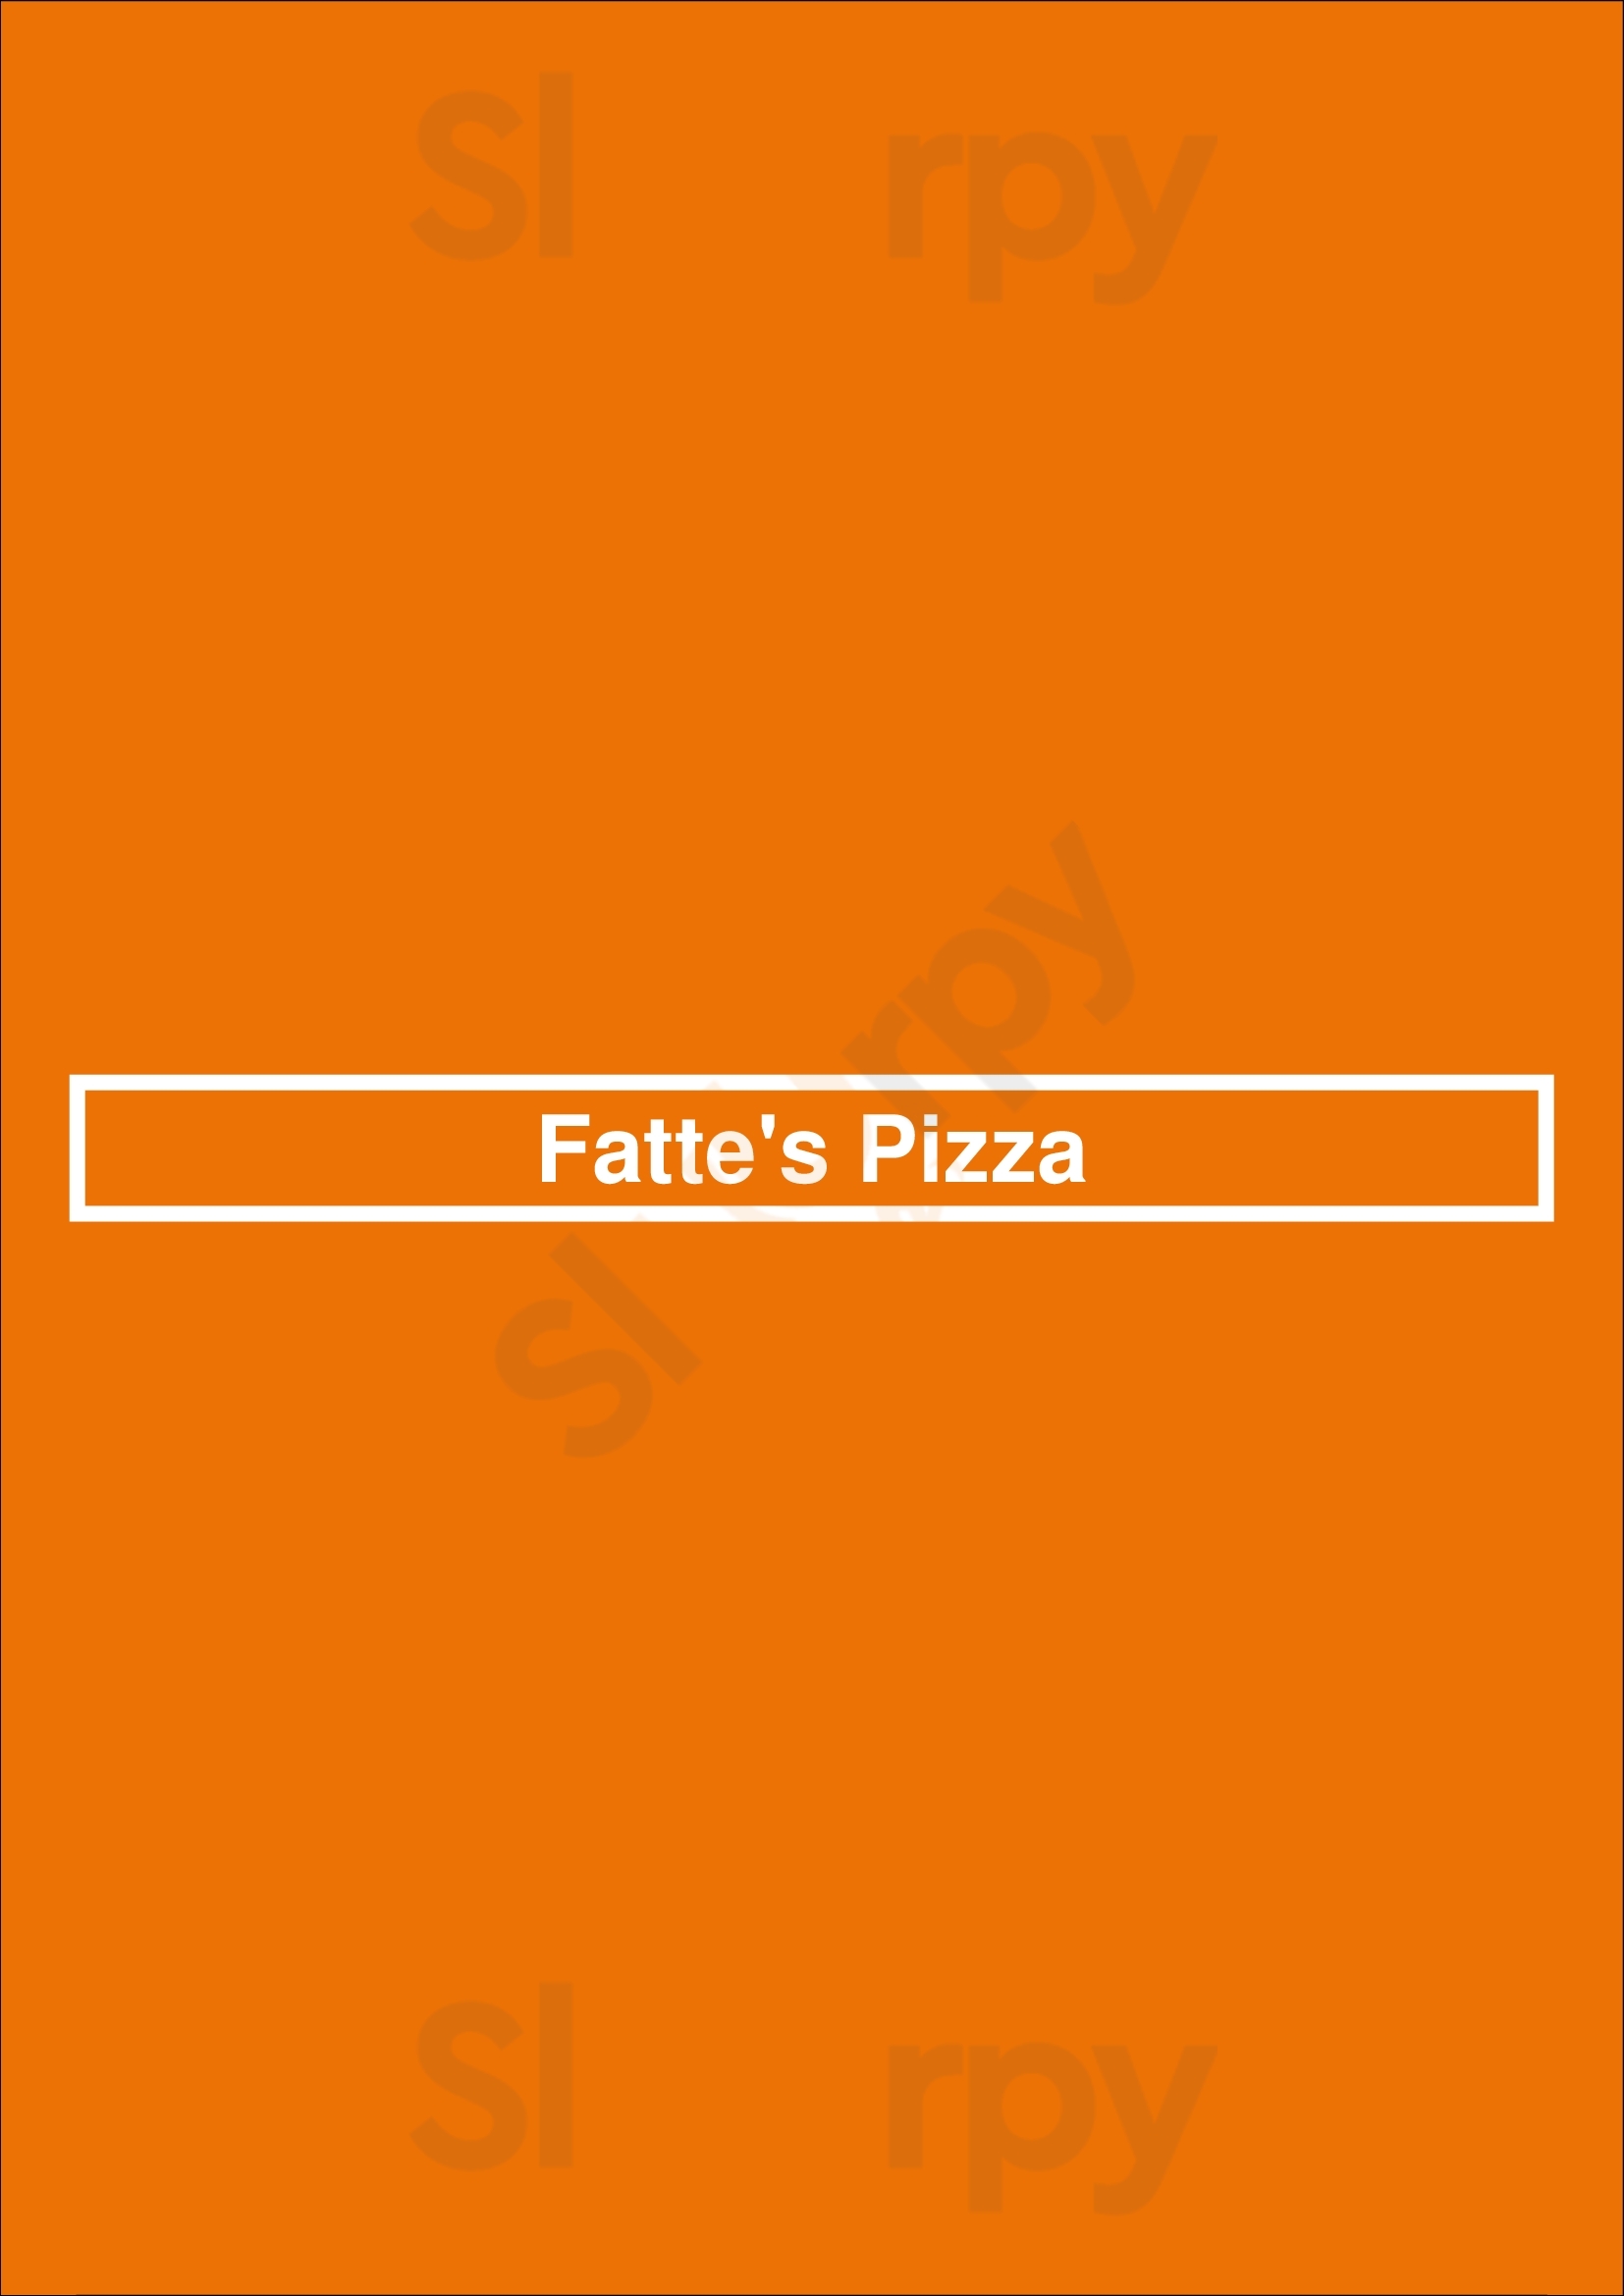 Fatte's Pizza Fresno Menu - 1